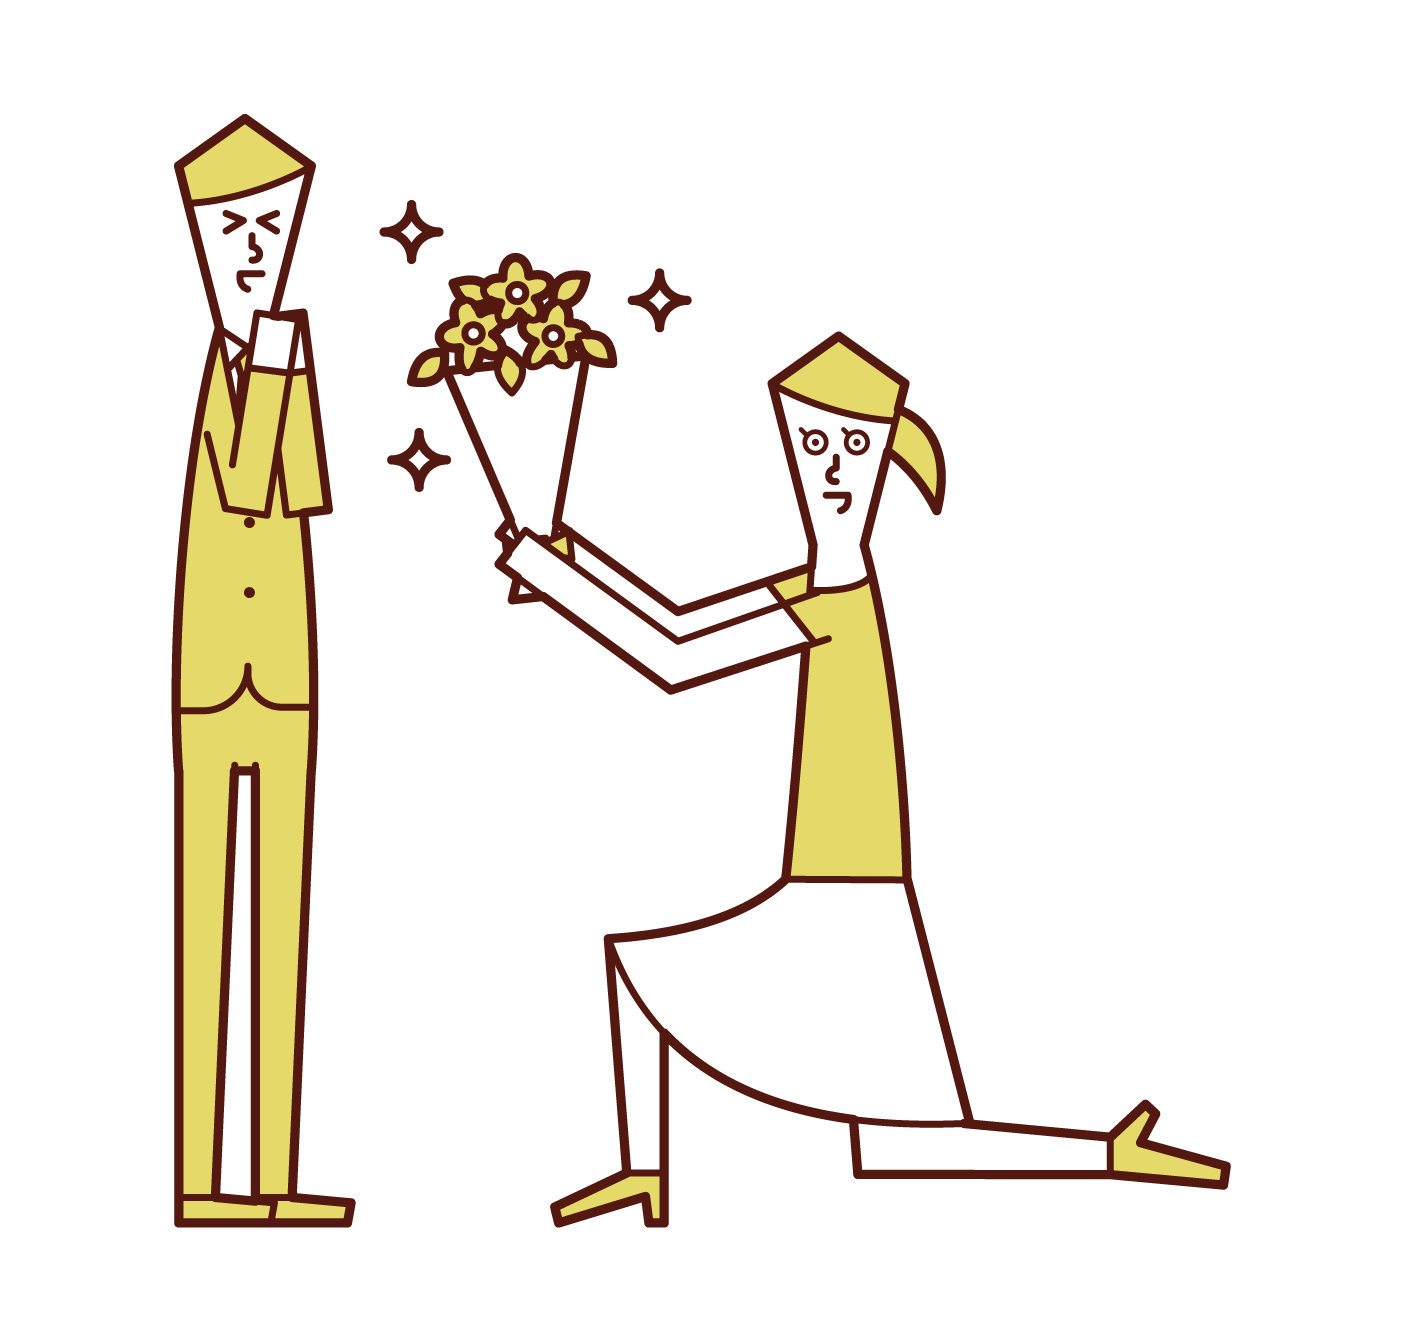 花束を渡してプロポーズする人 女性 のイラスト フリーイラスト素材 Kukukeke ククケケ